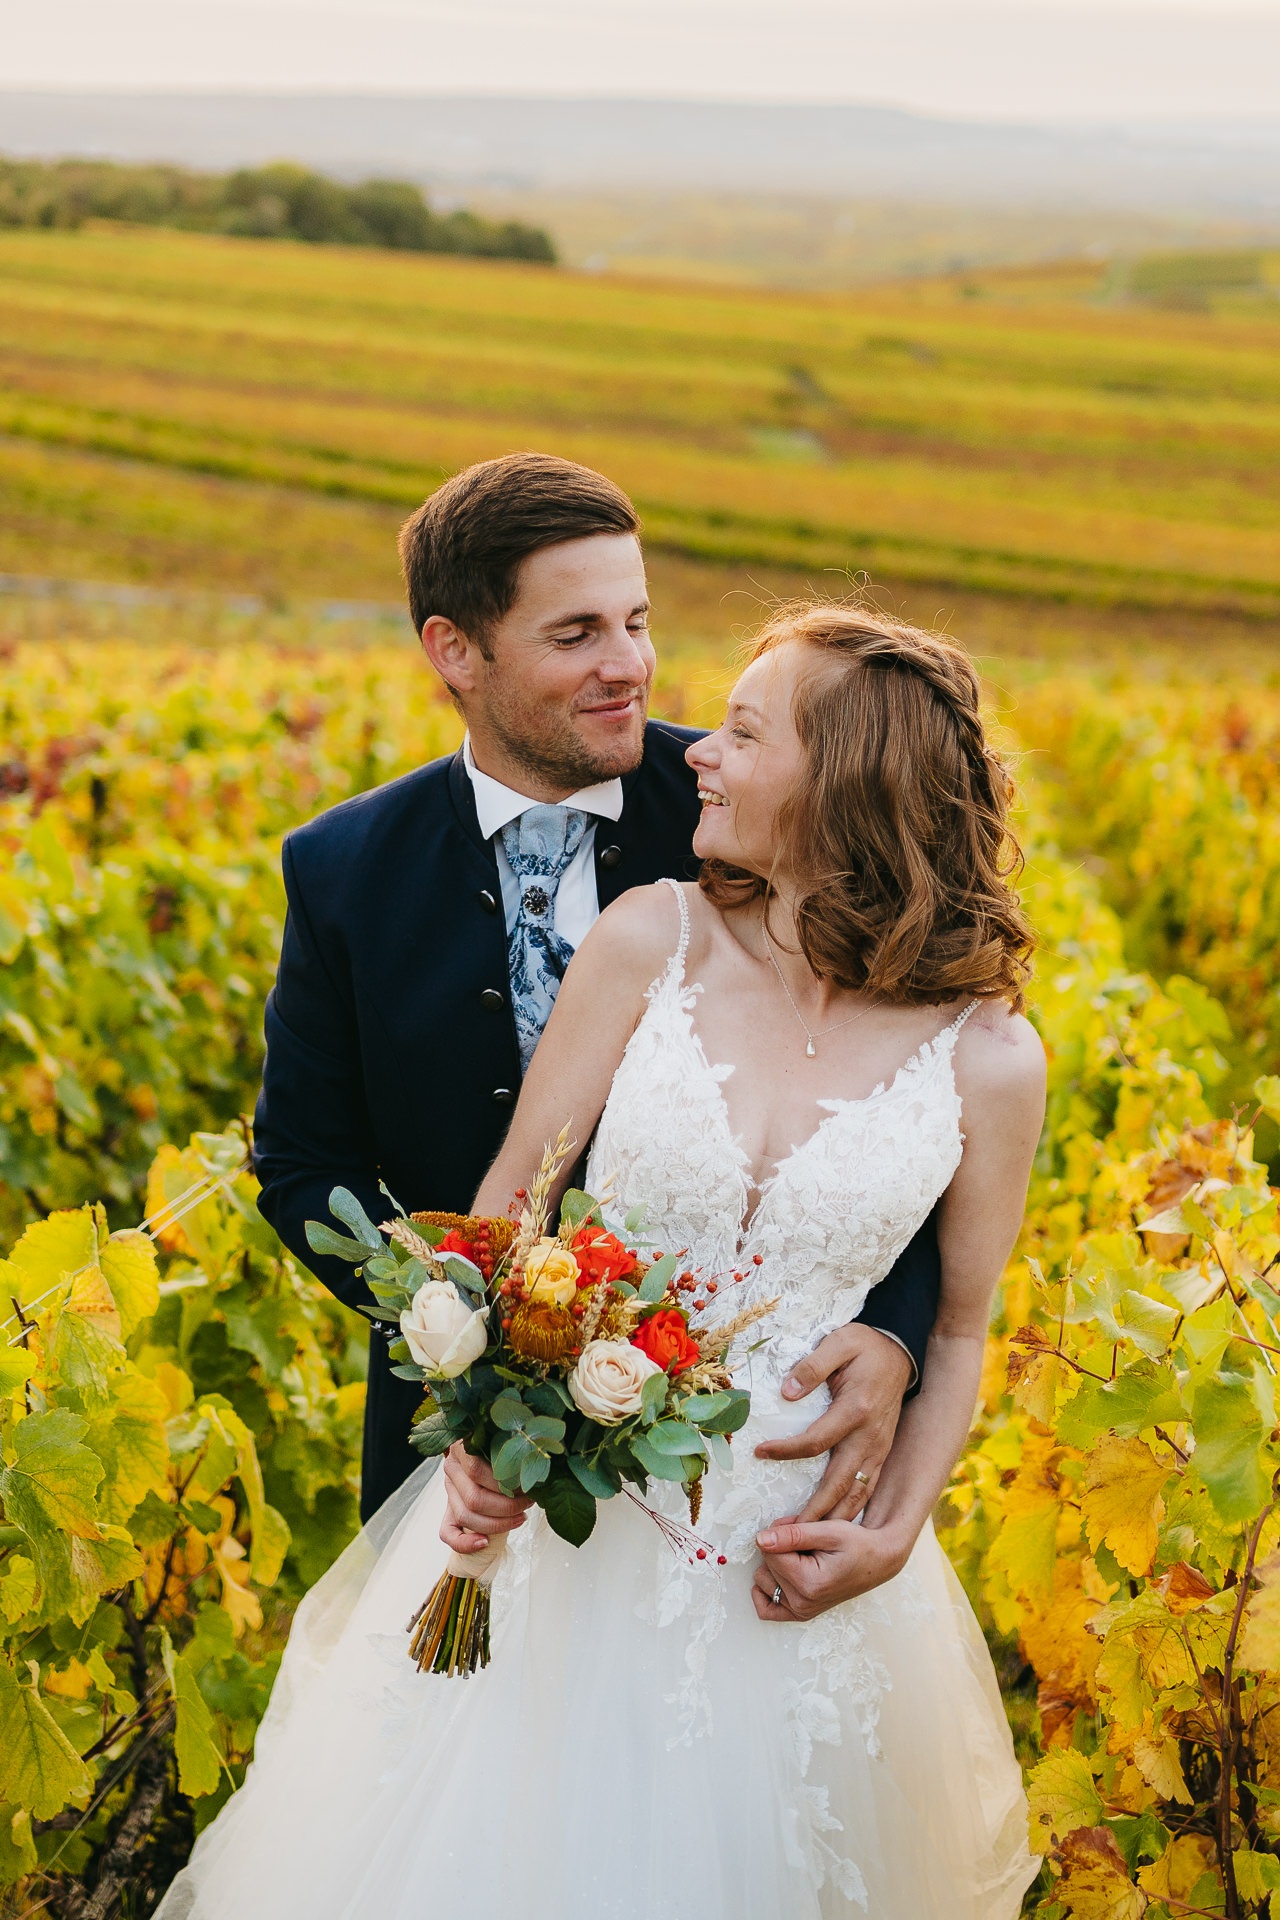 Un couple heureux en tenue de mariage posant dans un vignoble.